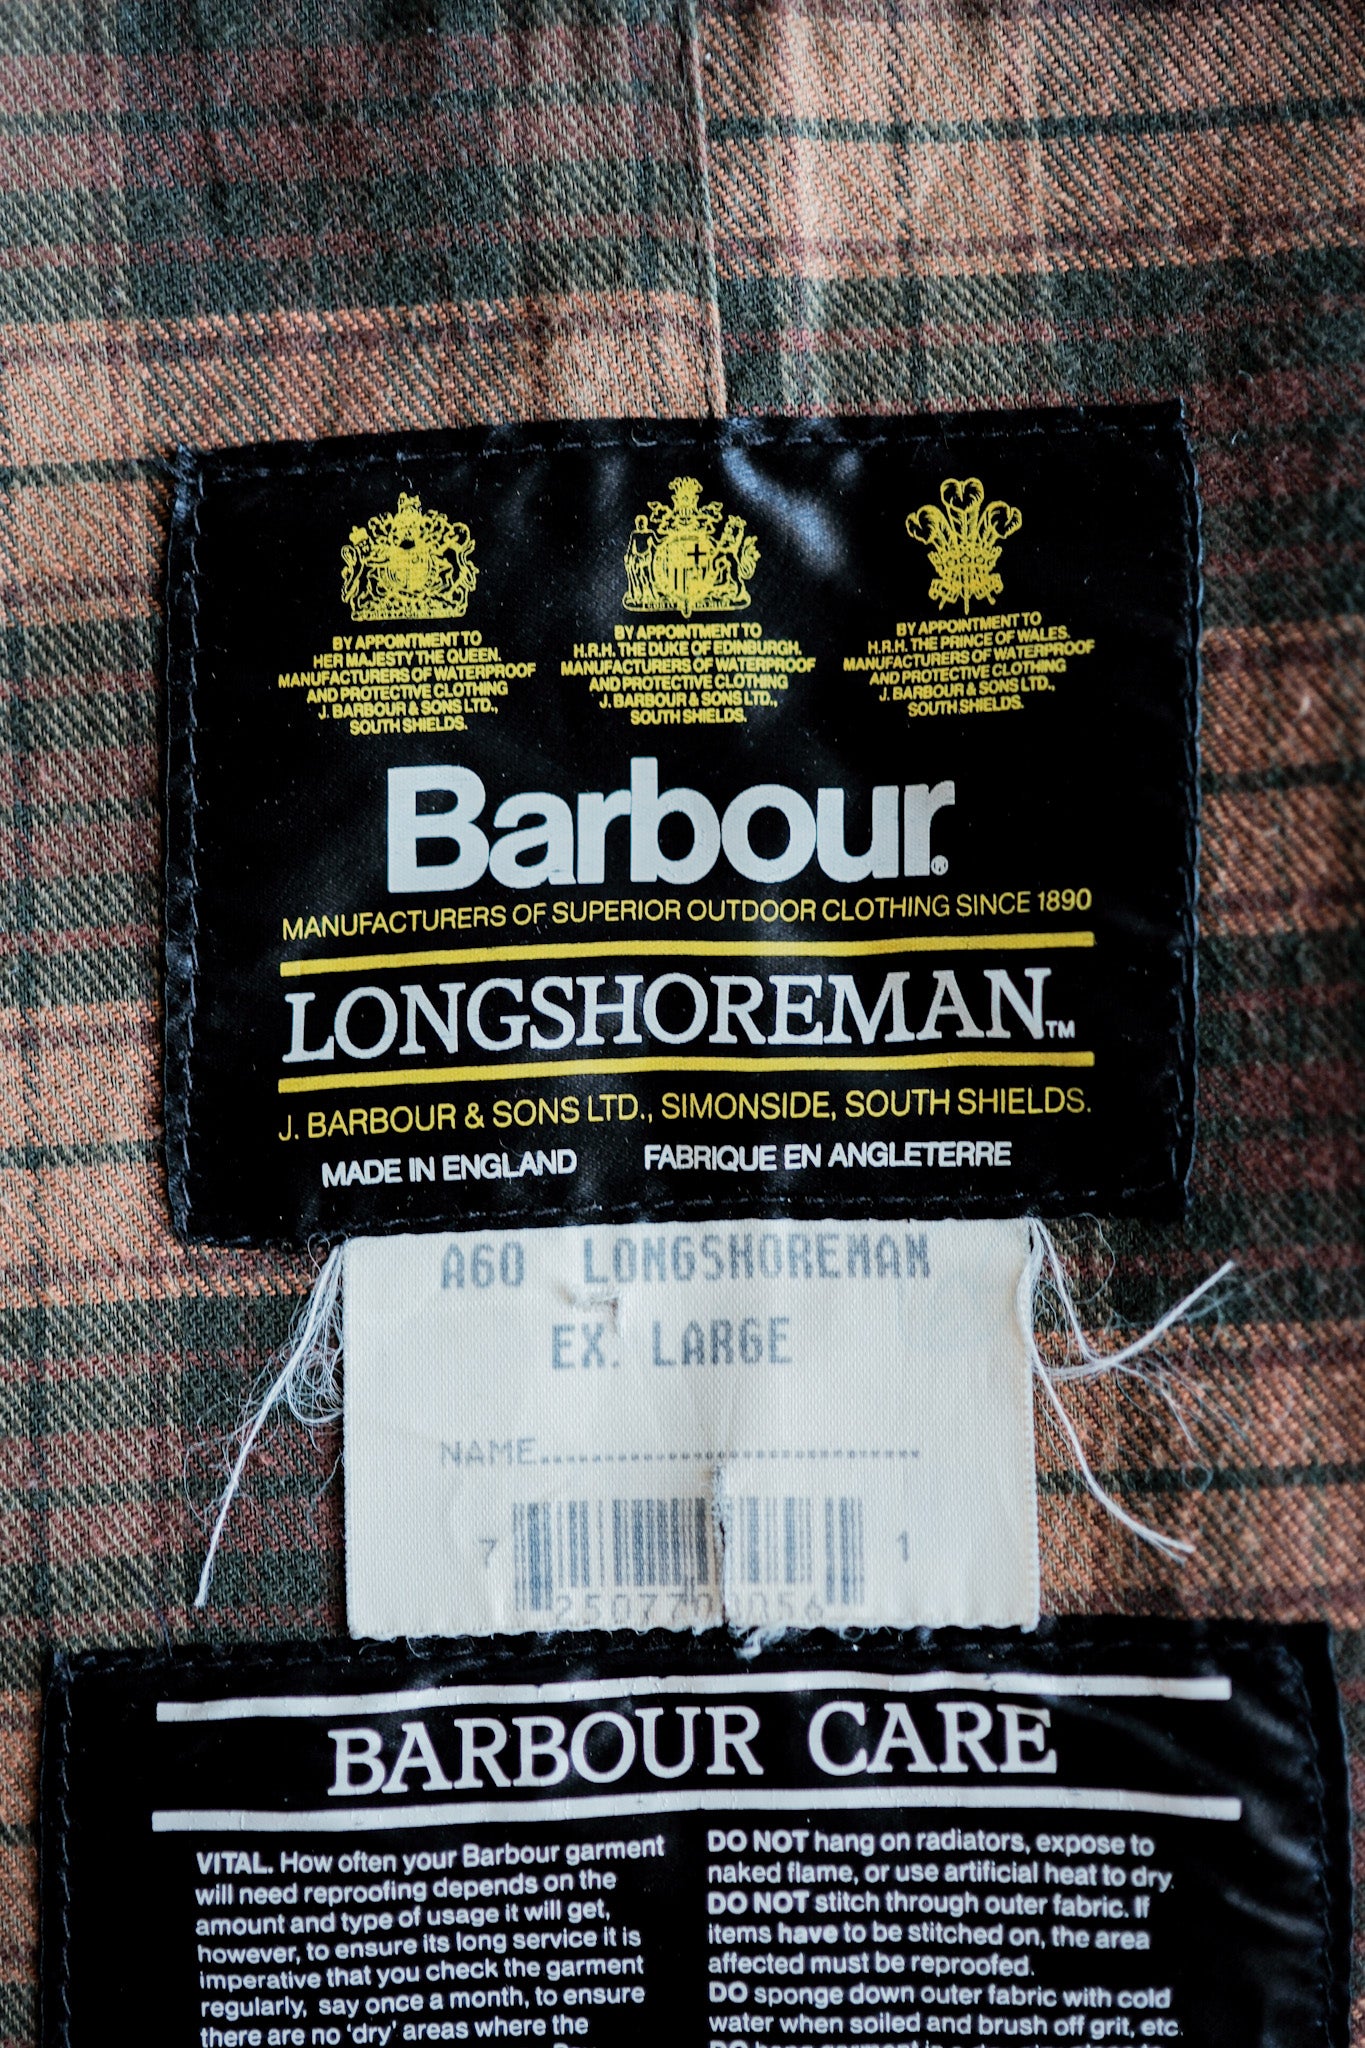 [~ 90's] Vintage Barbour "Longshoreman" 3 Crest Size.ex Large